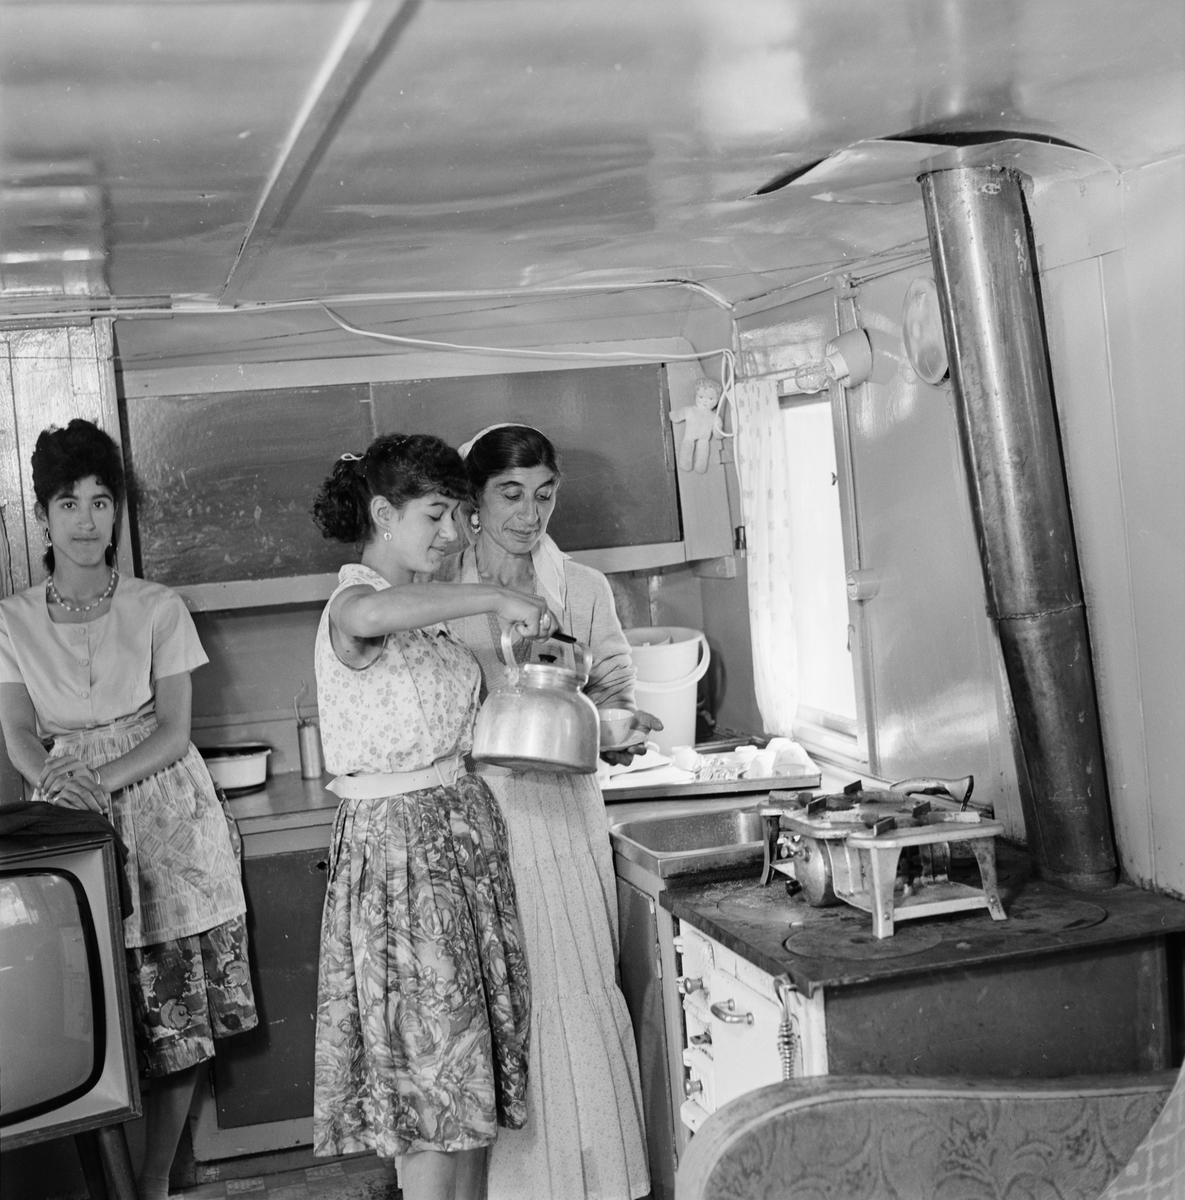 Margit Taikon får en kopp kaffe av sin dotter Marianne, i en bostadsvagn i utkanten av Uppsala, 1961